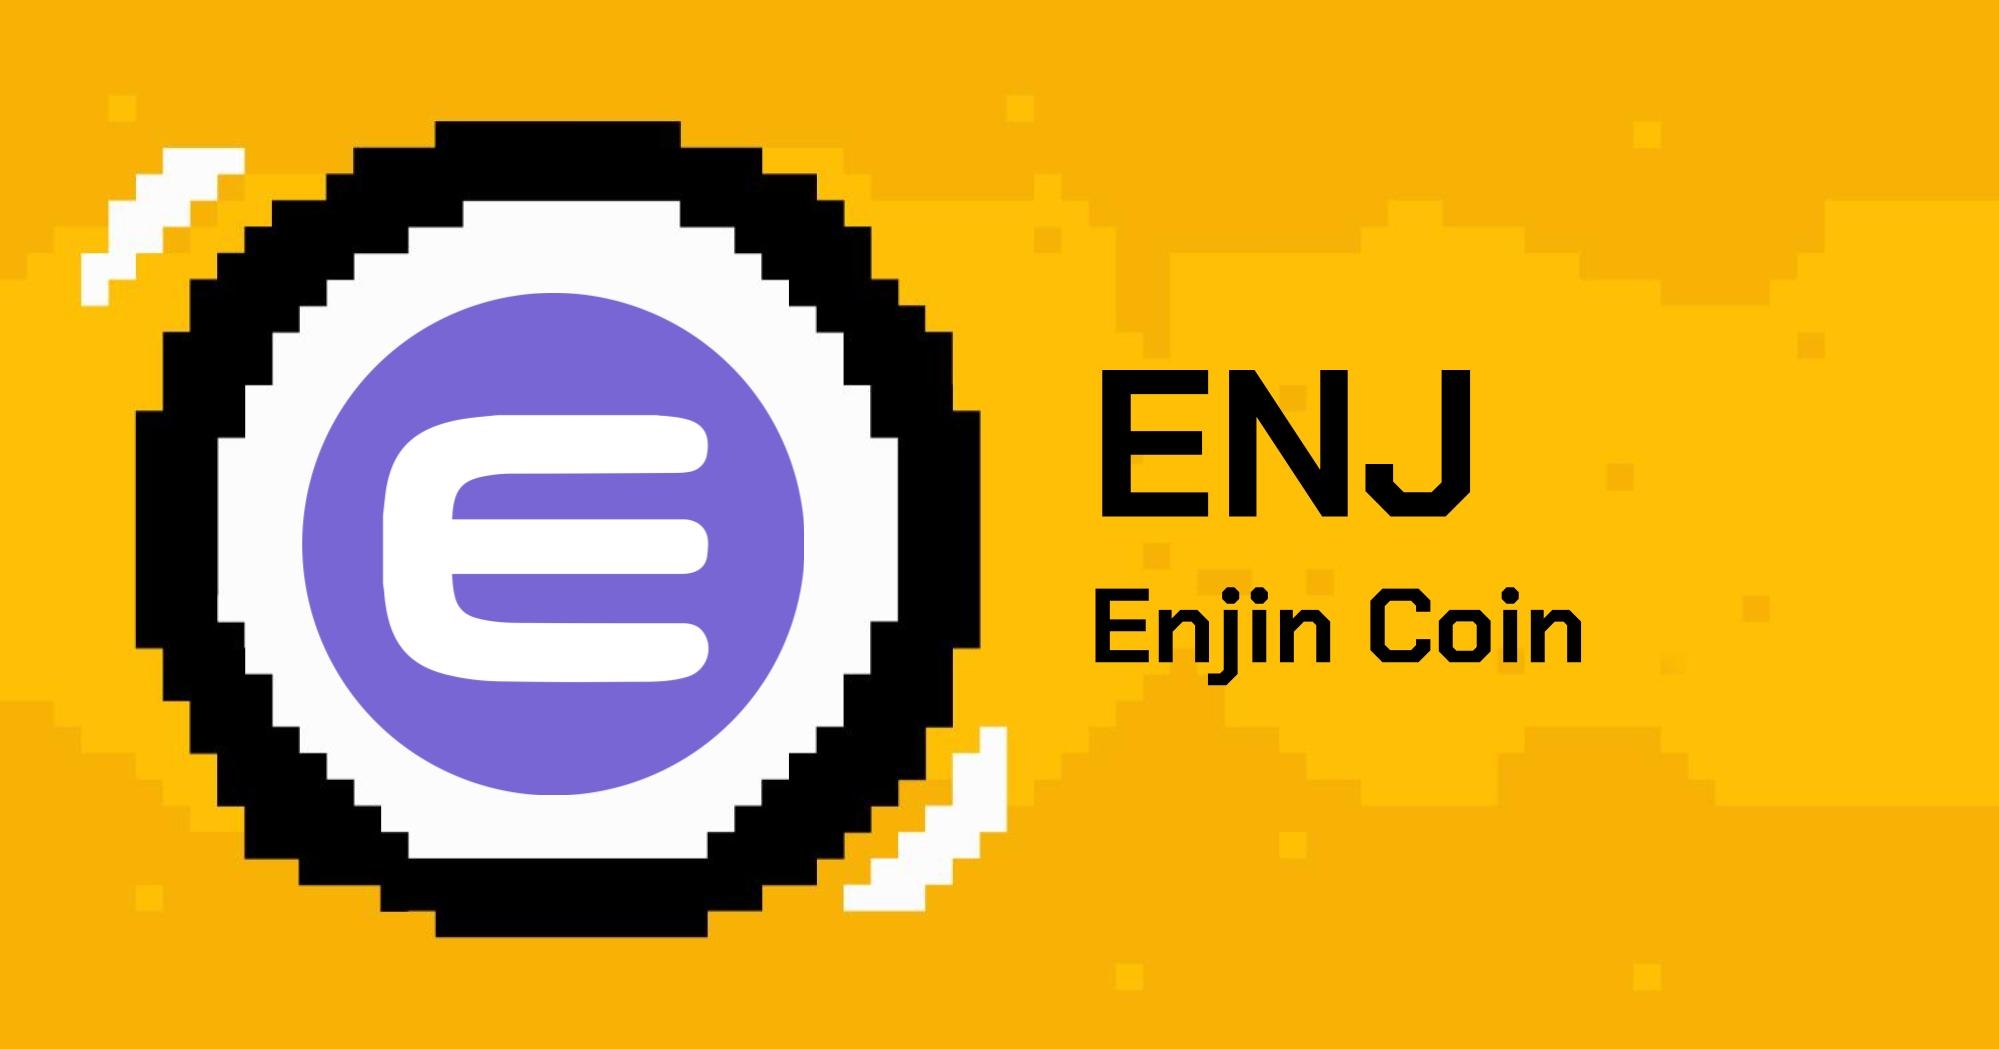 enjin coin là gì